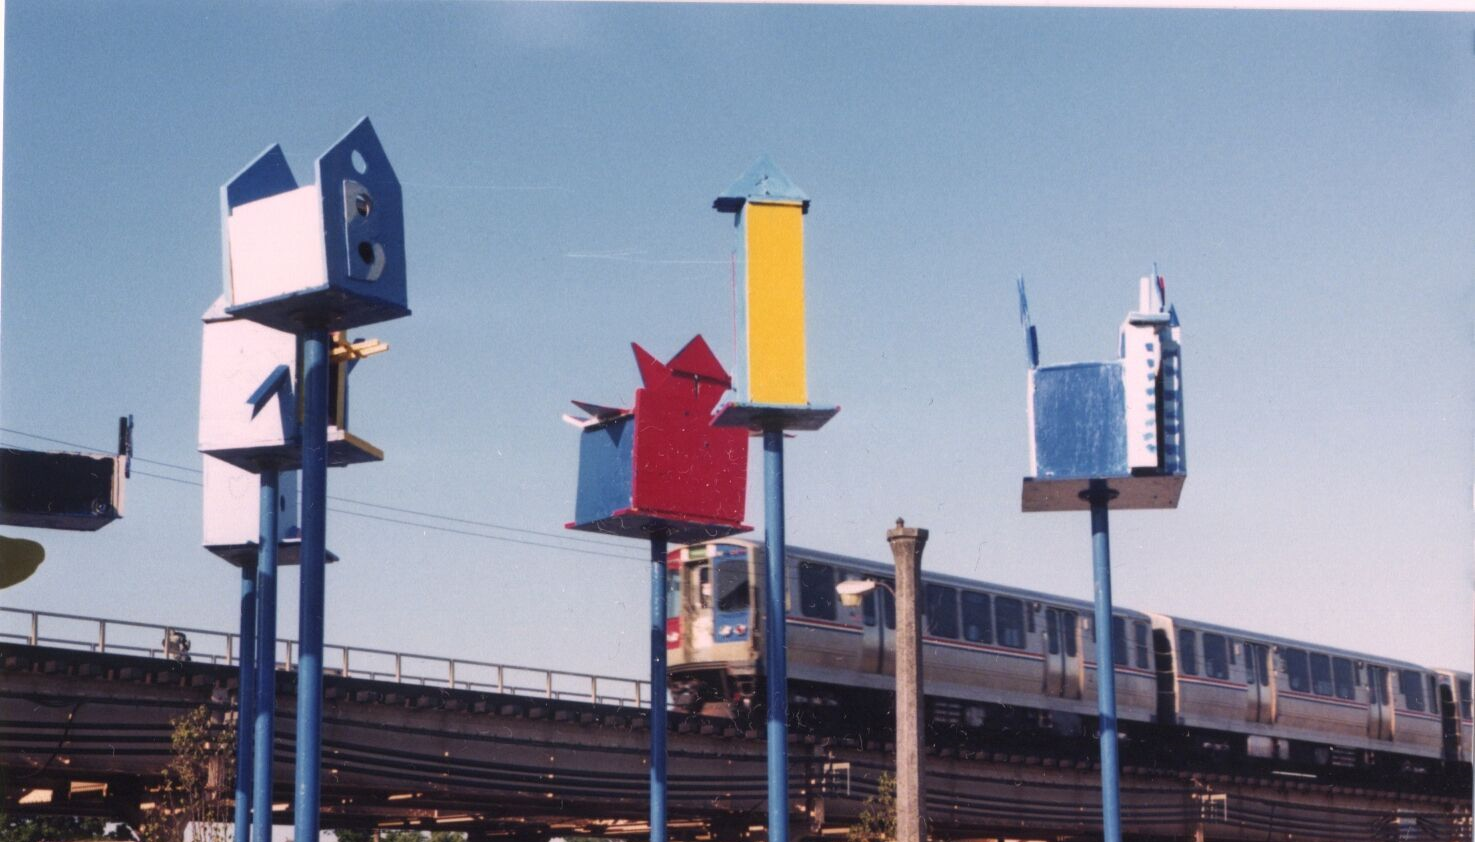 Birdhouses, 2003